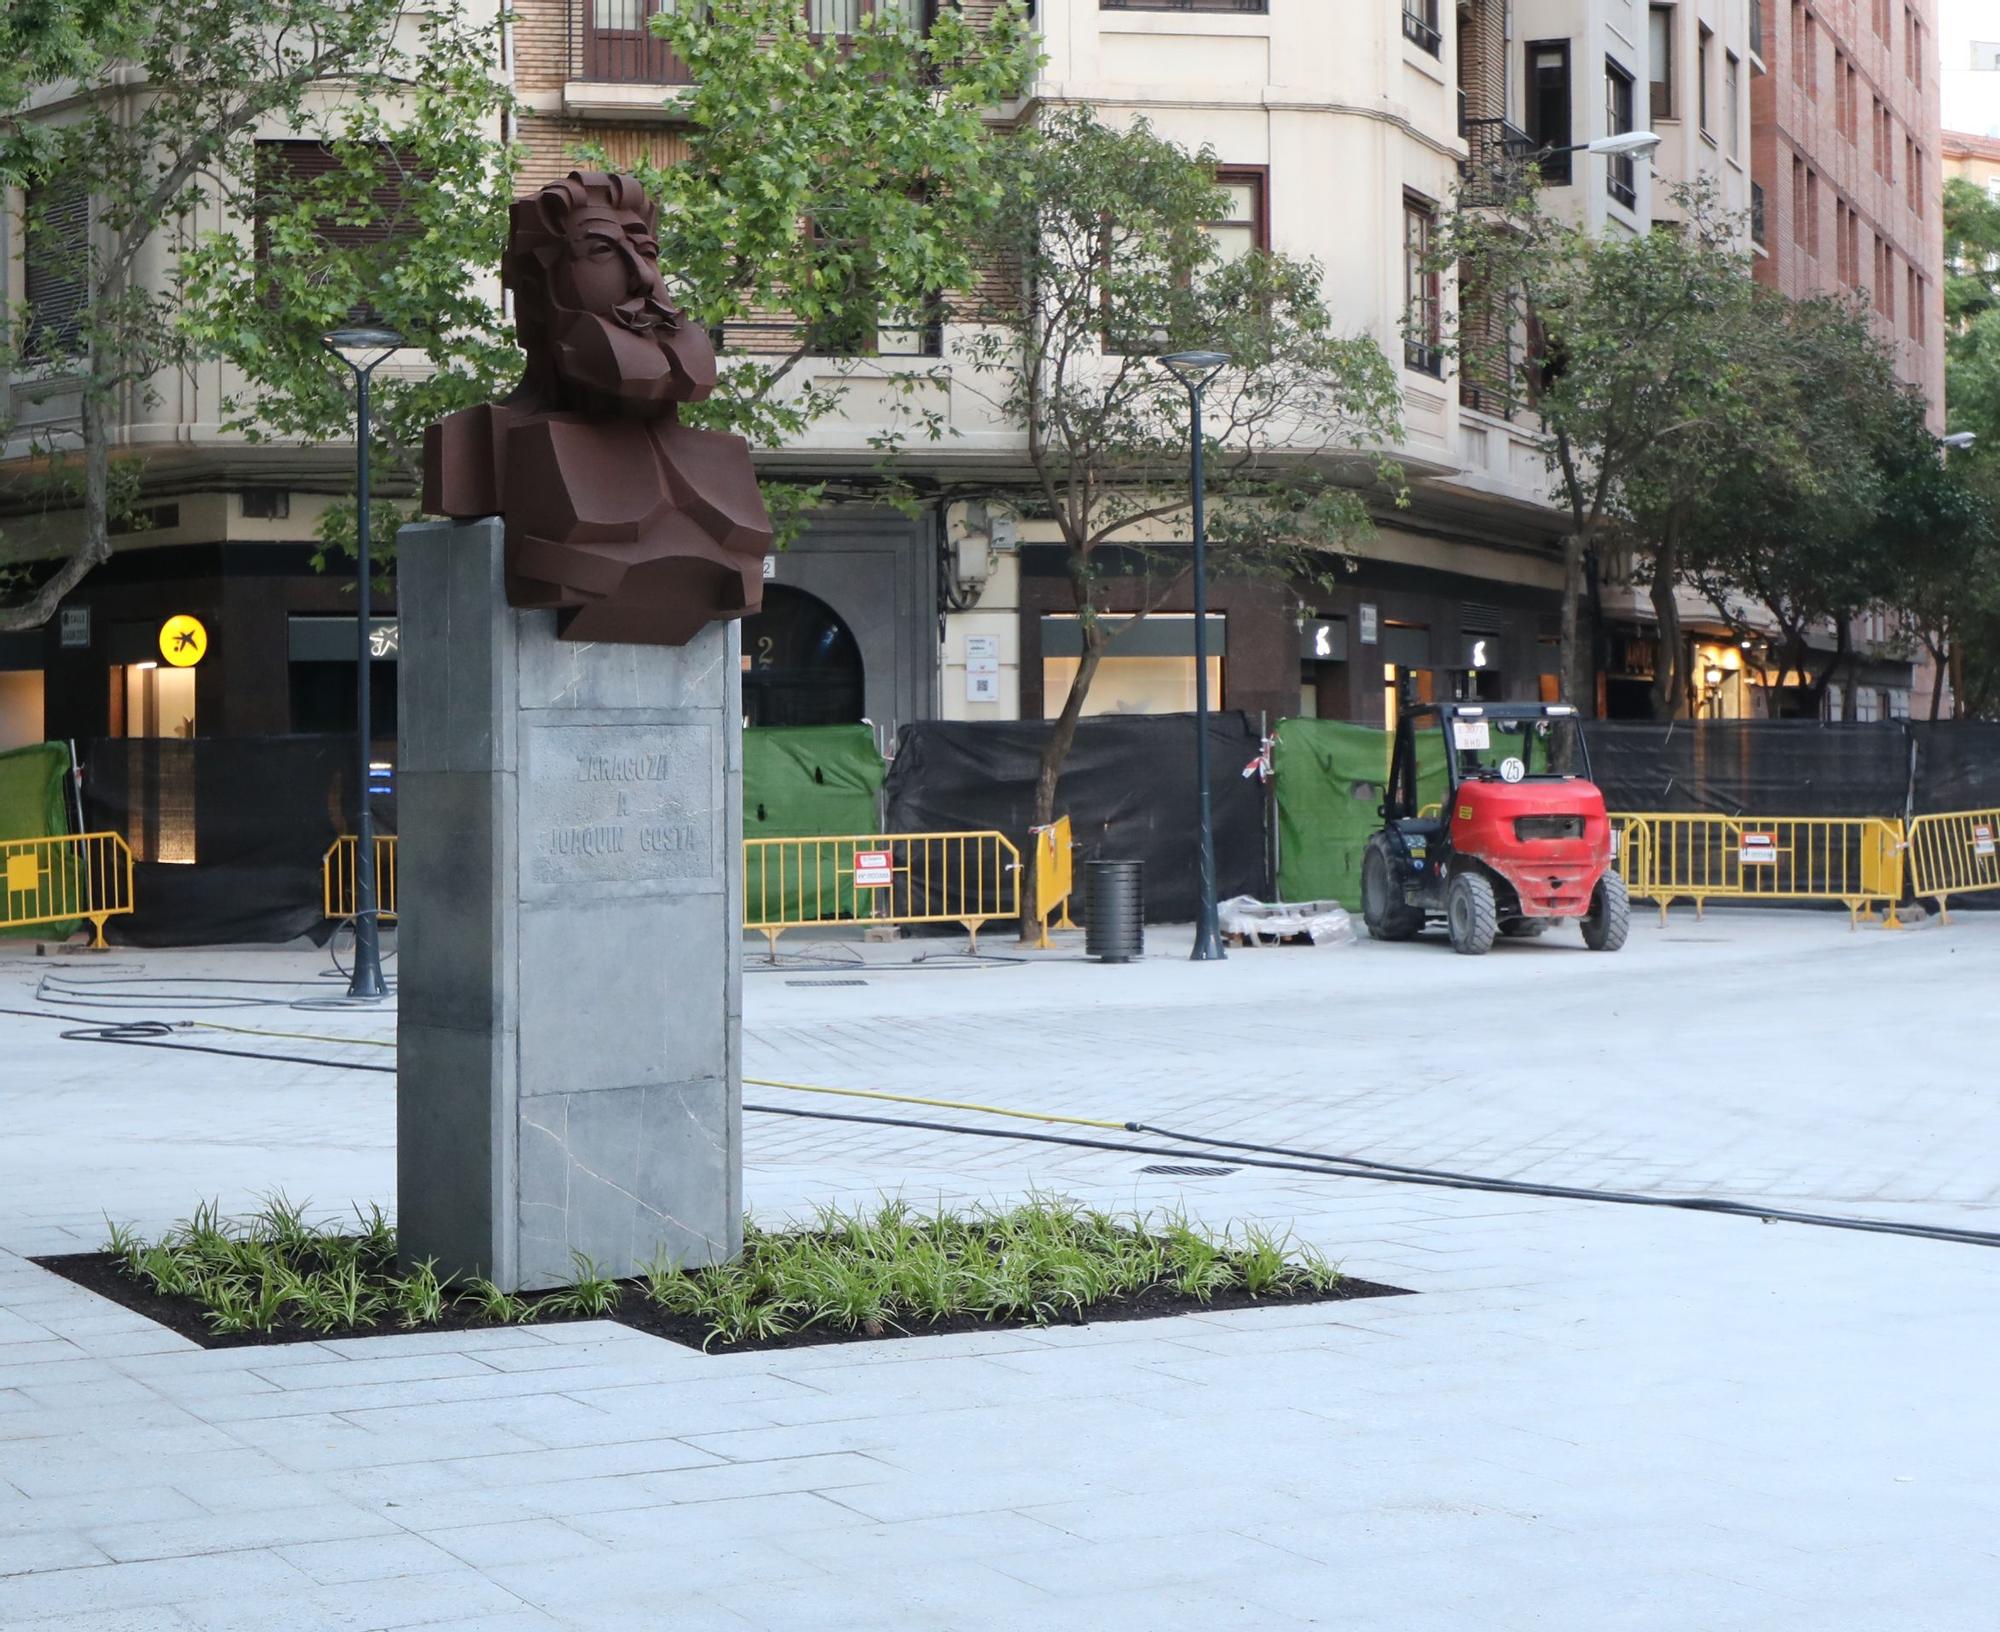 El busto de Joaquín Costa vuelve a la plaza Santa Engracia